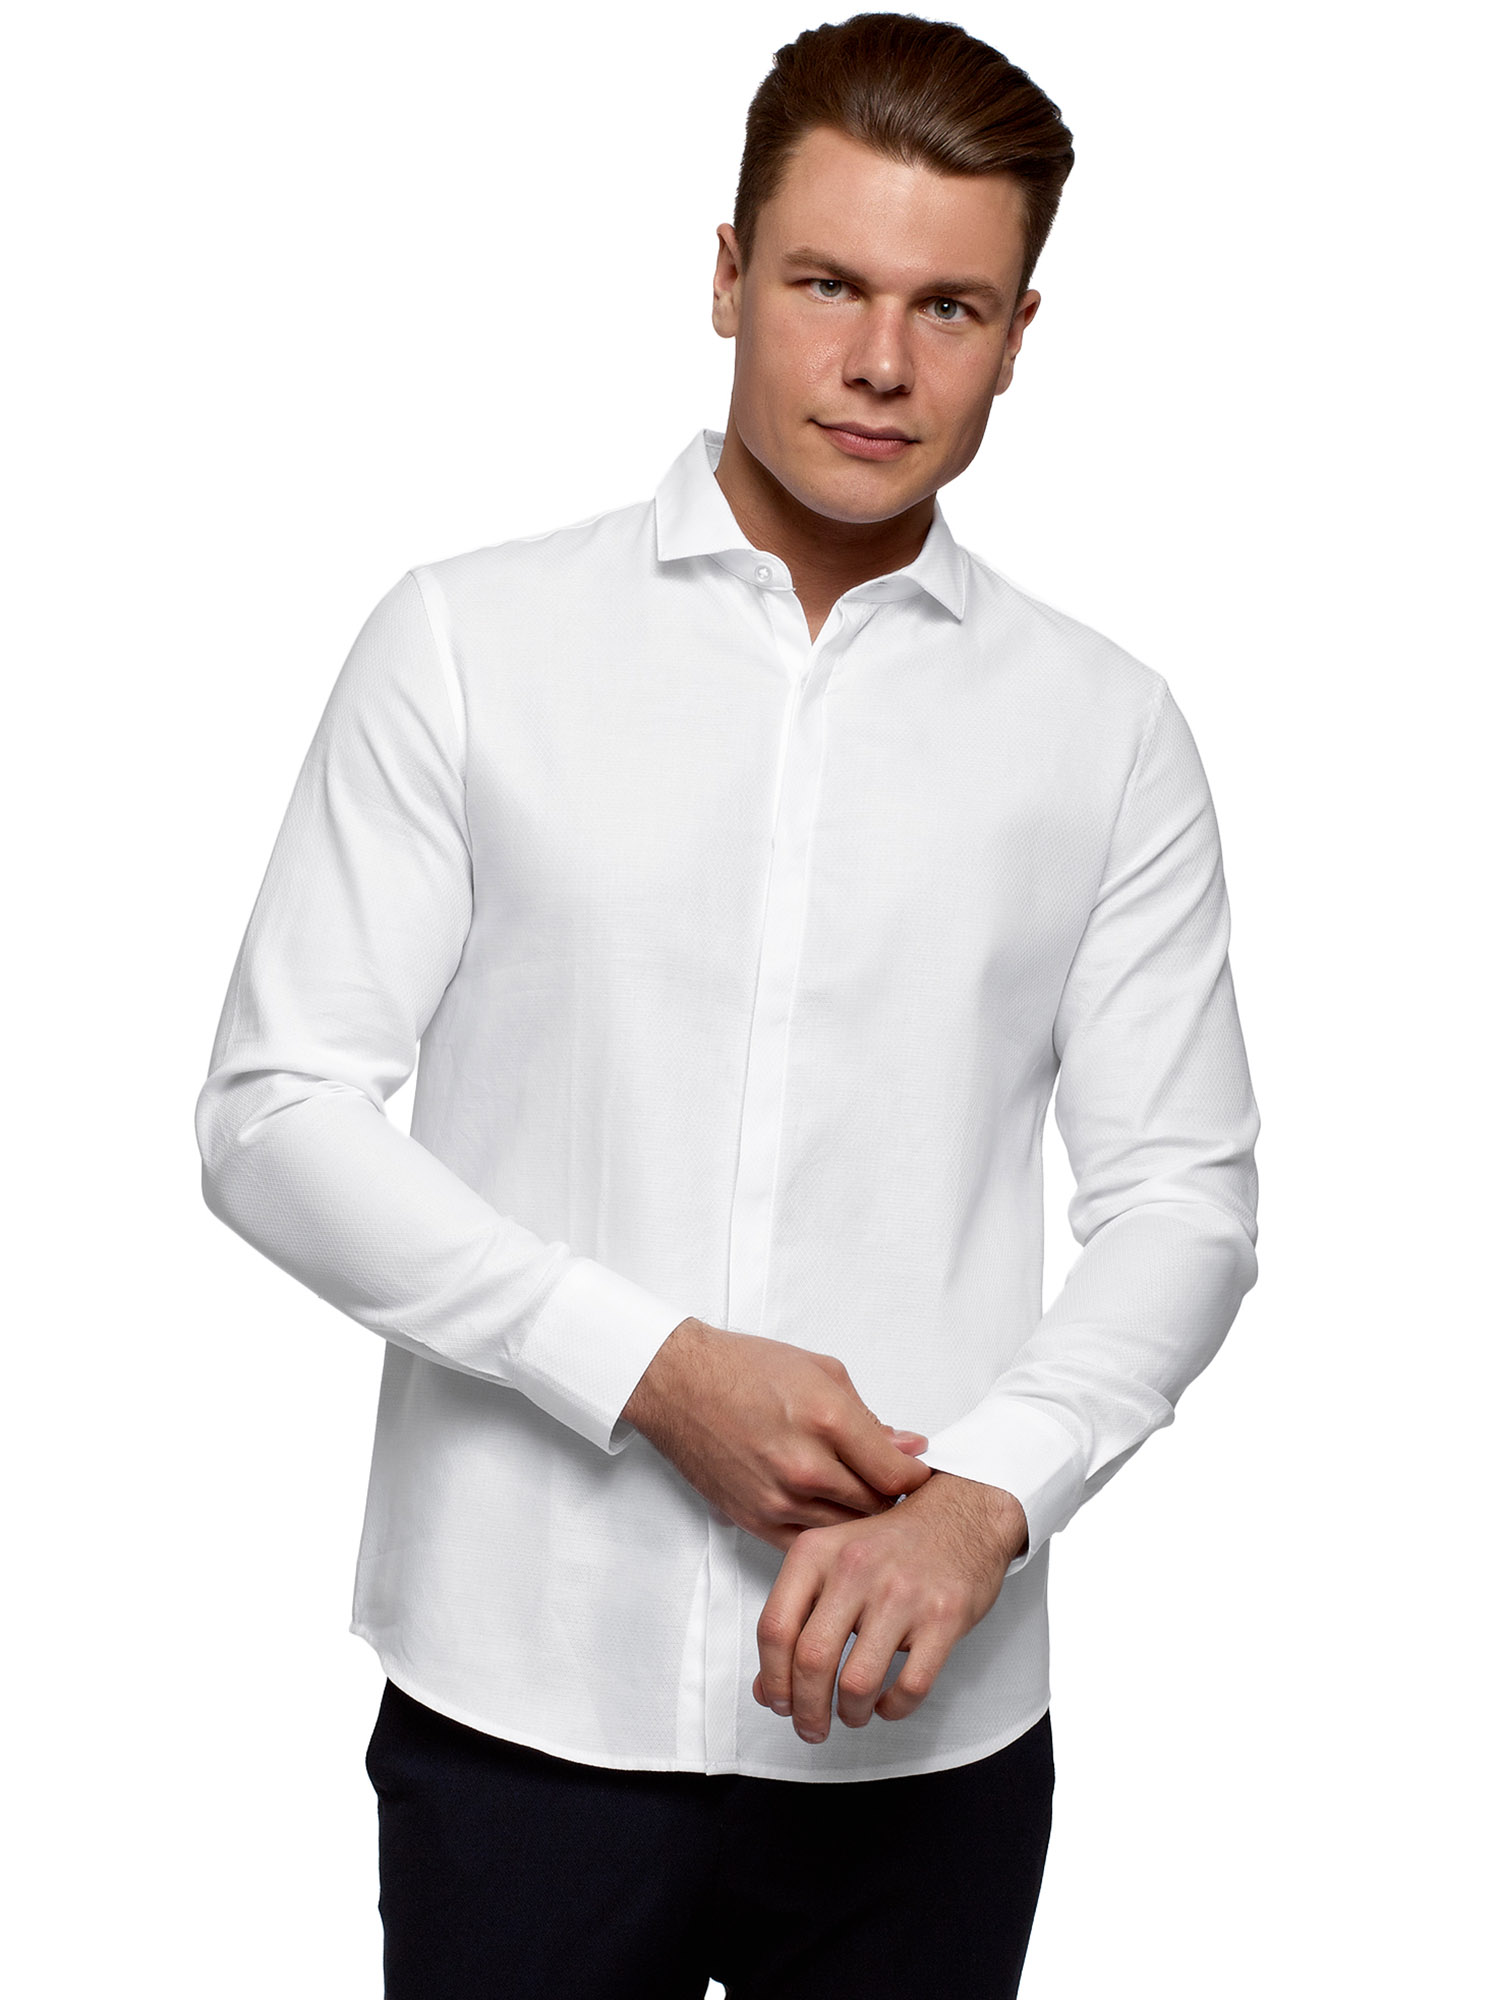 Рубашка мужская oodji 3B110017M-4 белая XS